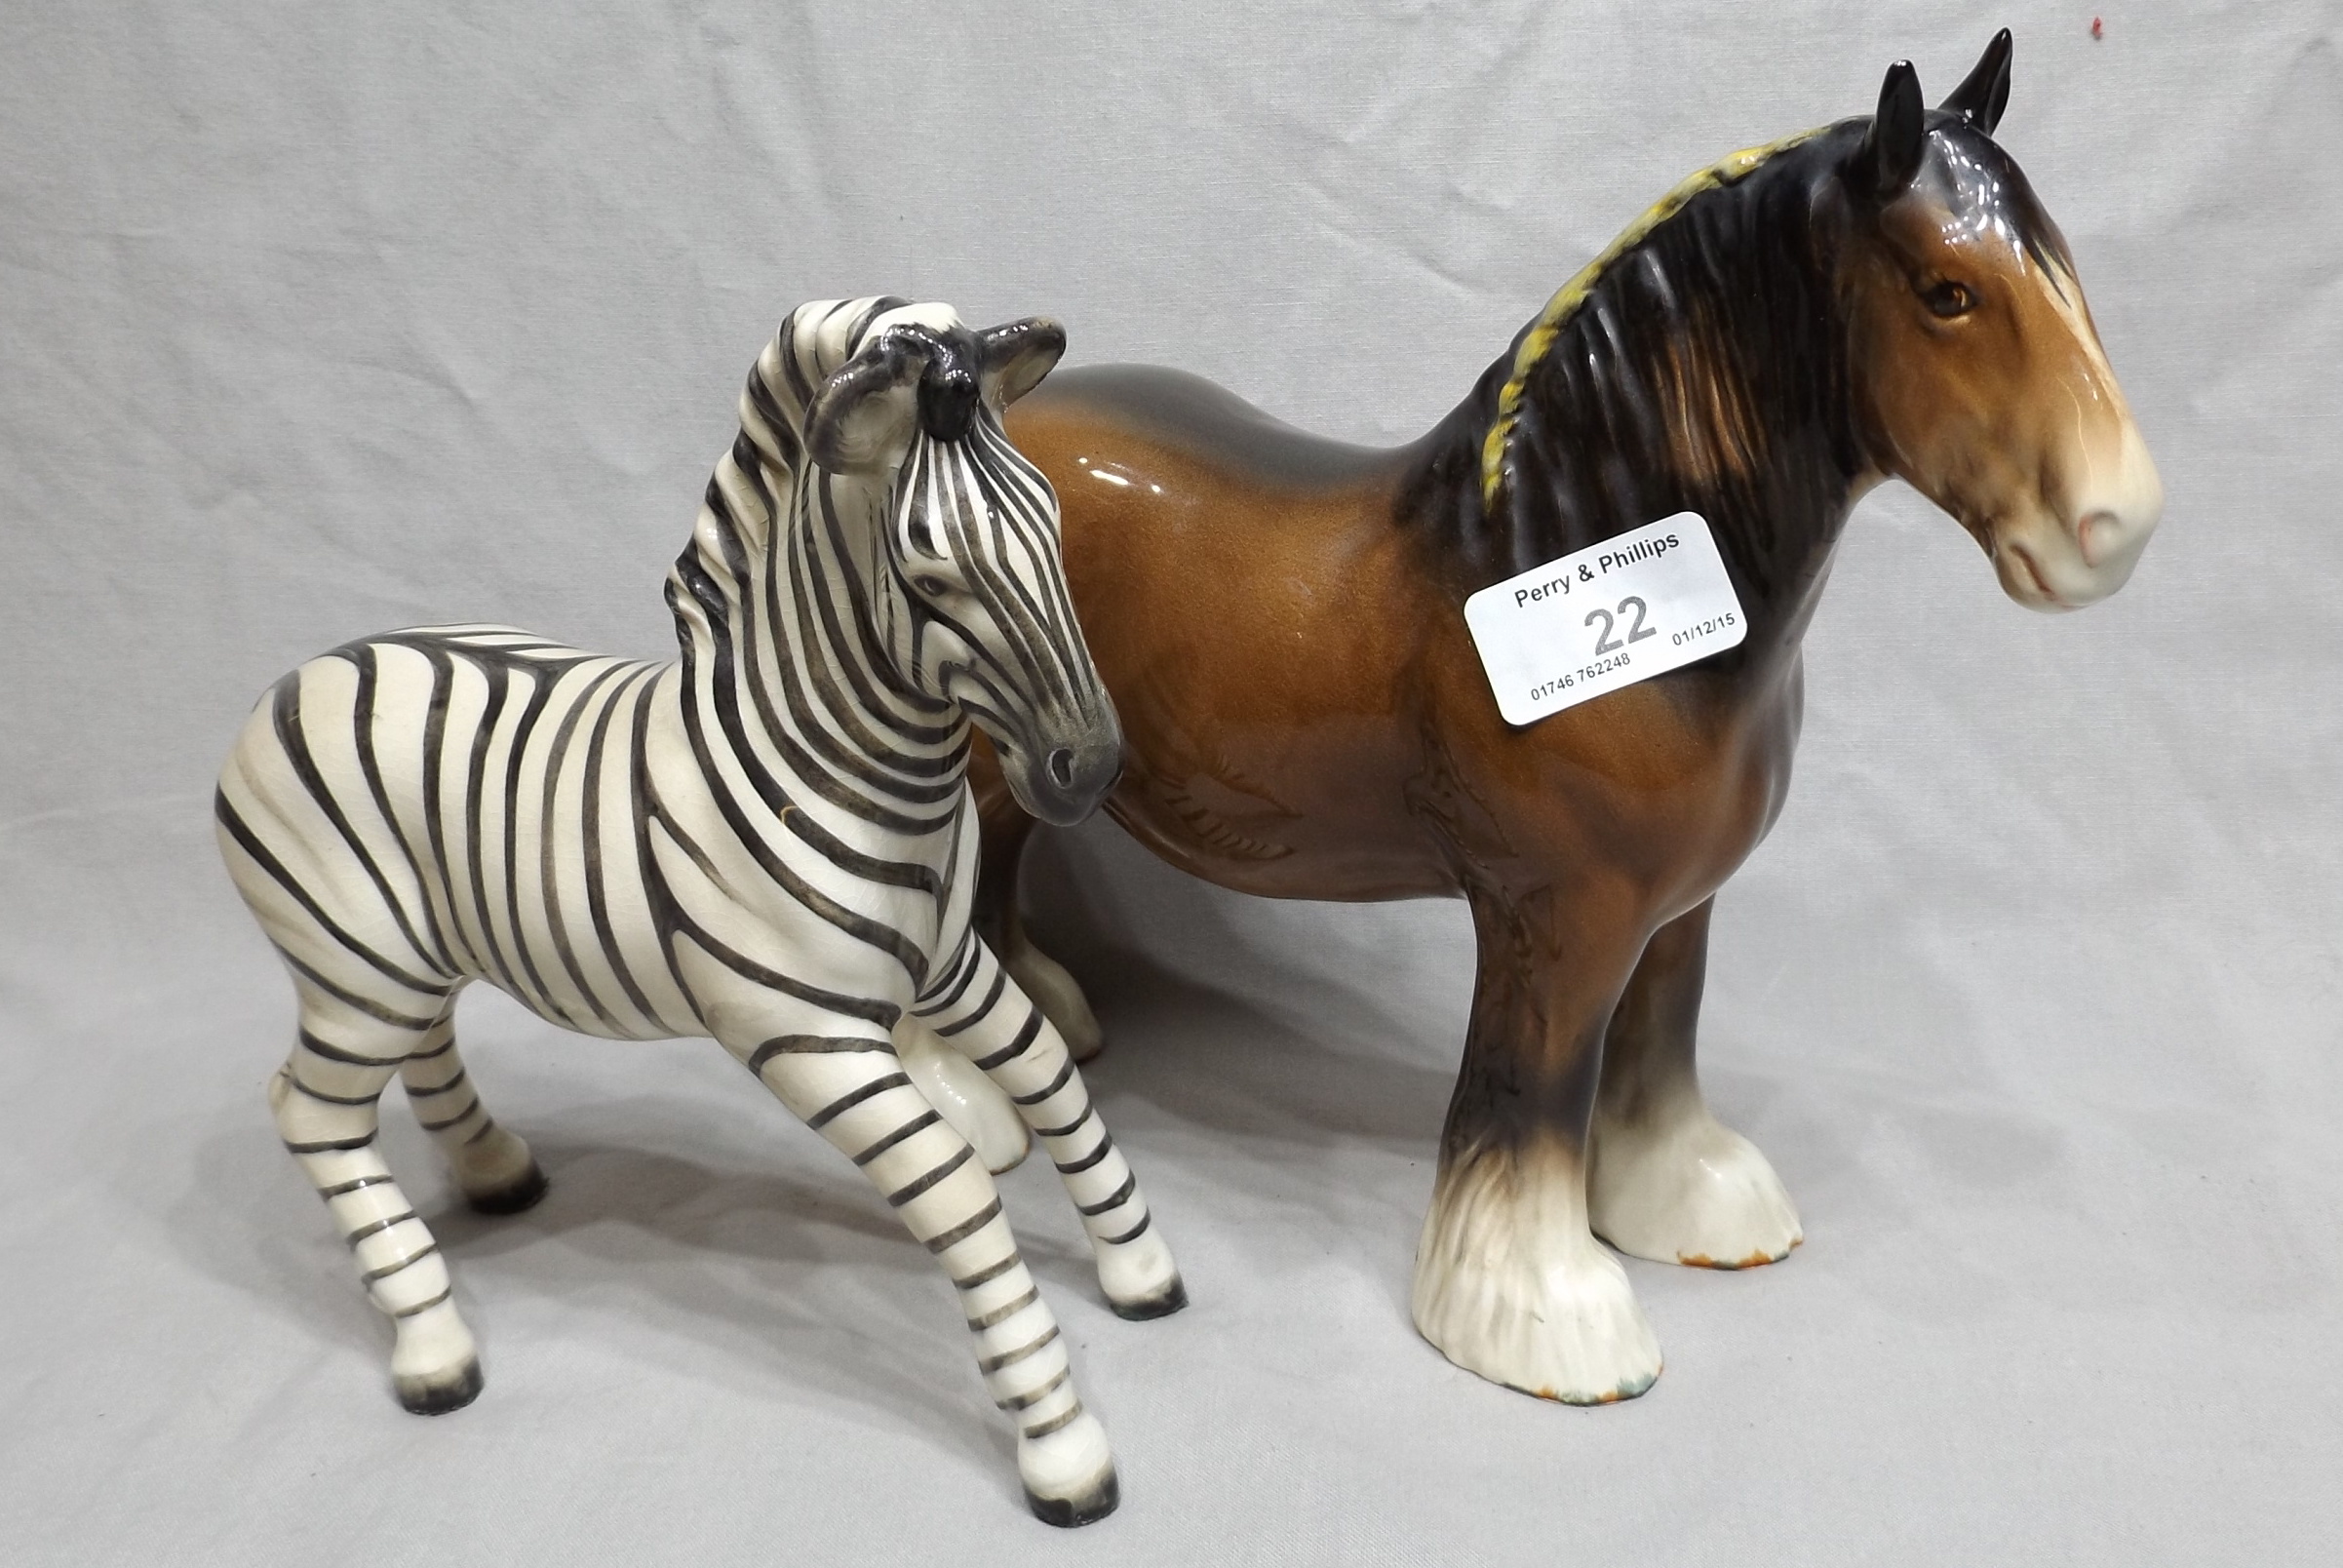 Beswick Zebra and Beswick Shirehorse